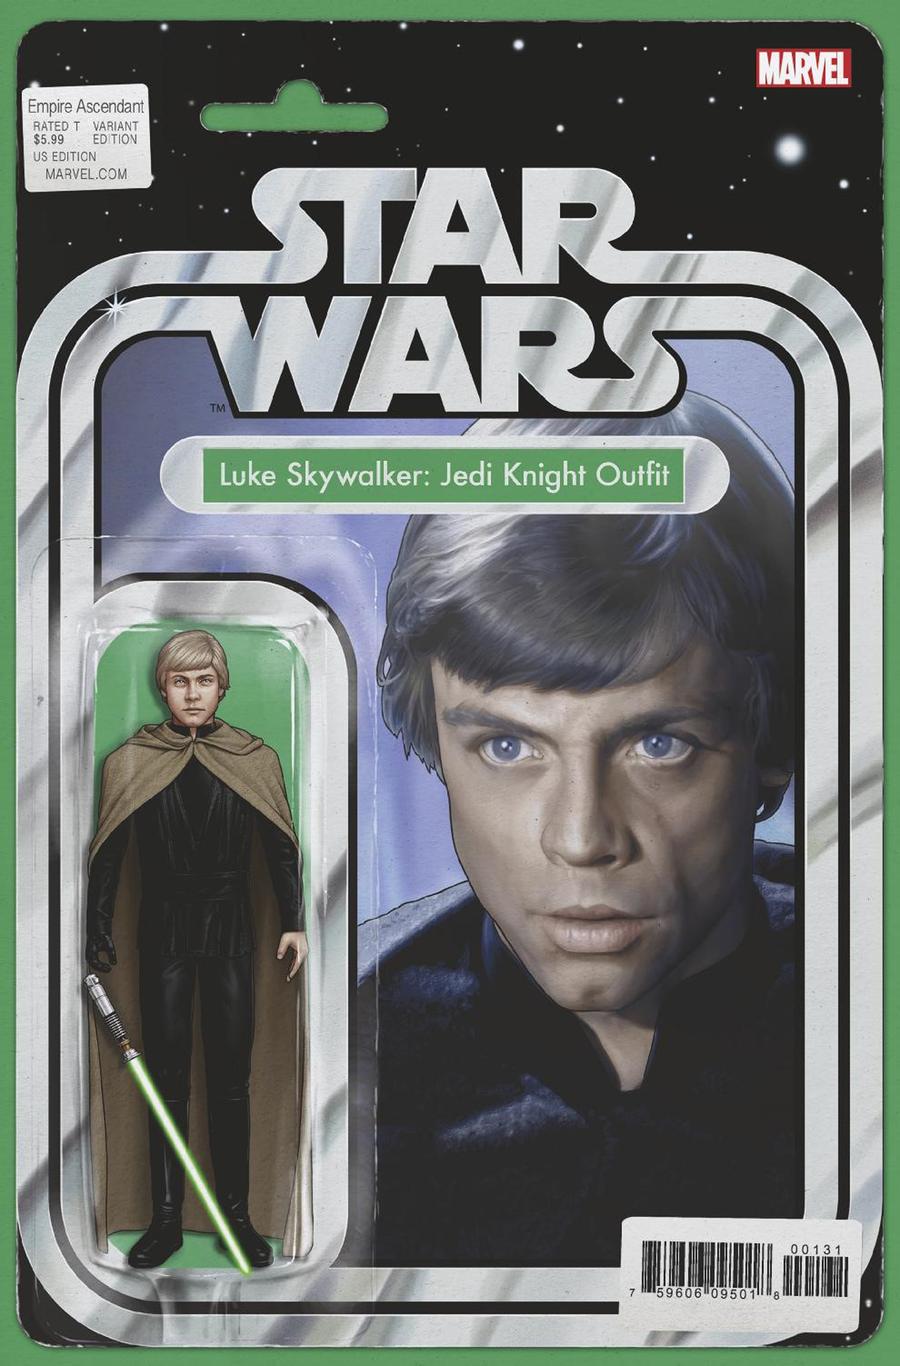 Star Wars Empire Ascendant #1 Cover C Variant John Tyler Christopher Action Figure Cover